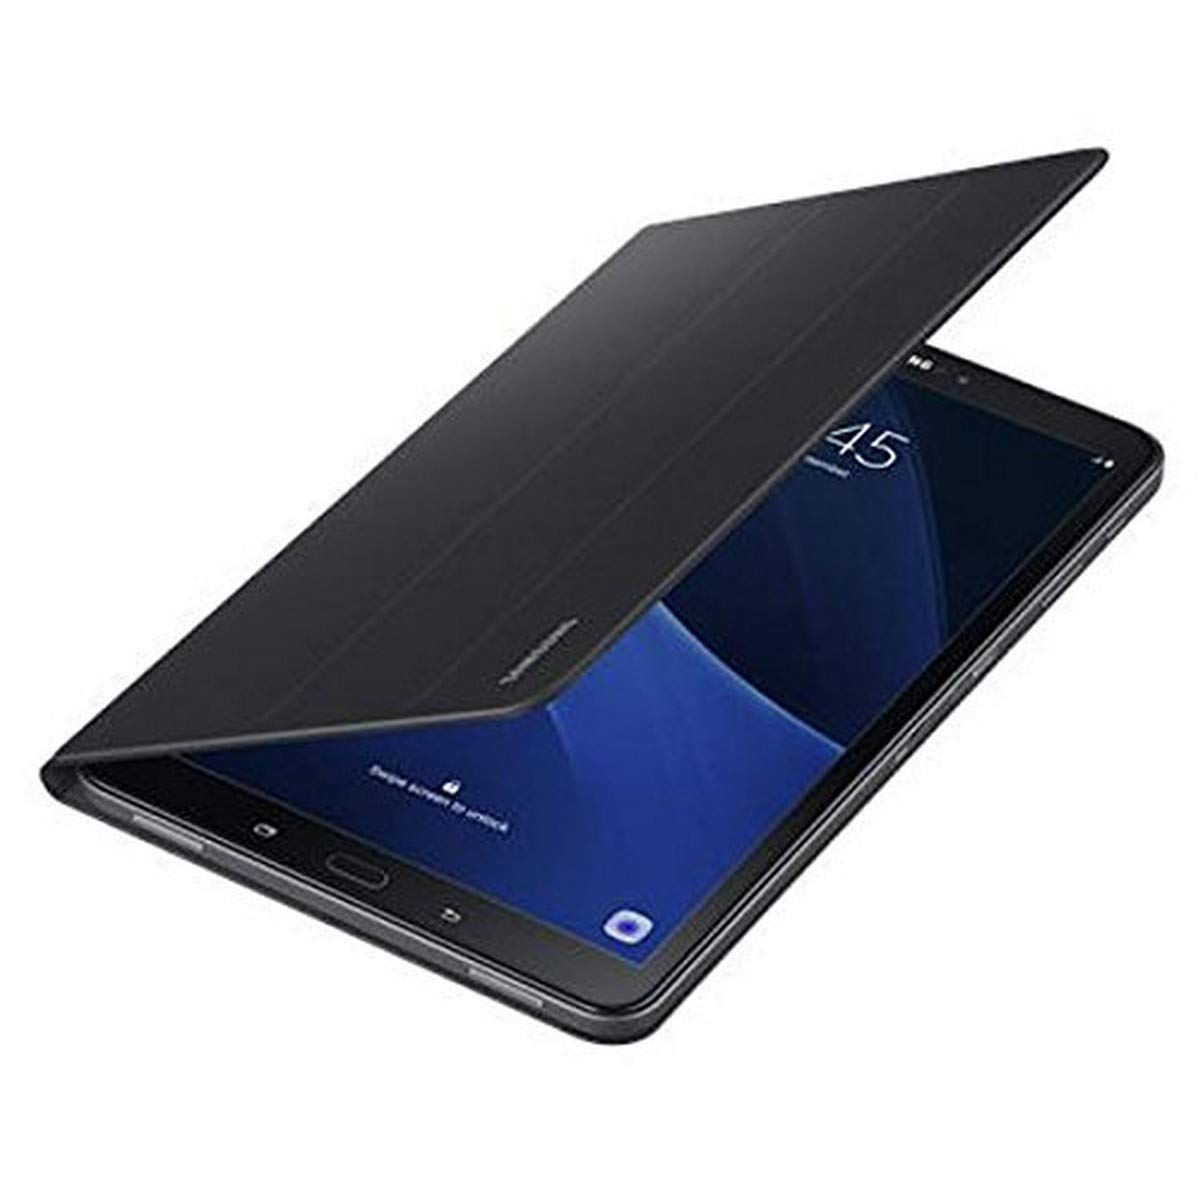 SAMSUNG Book Cover für Galaxy Tab A 10.1 (2016) Schutzhüle für Vorder- und Rückseite mit Aufstellfunktion schwarz